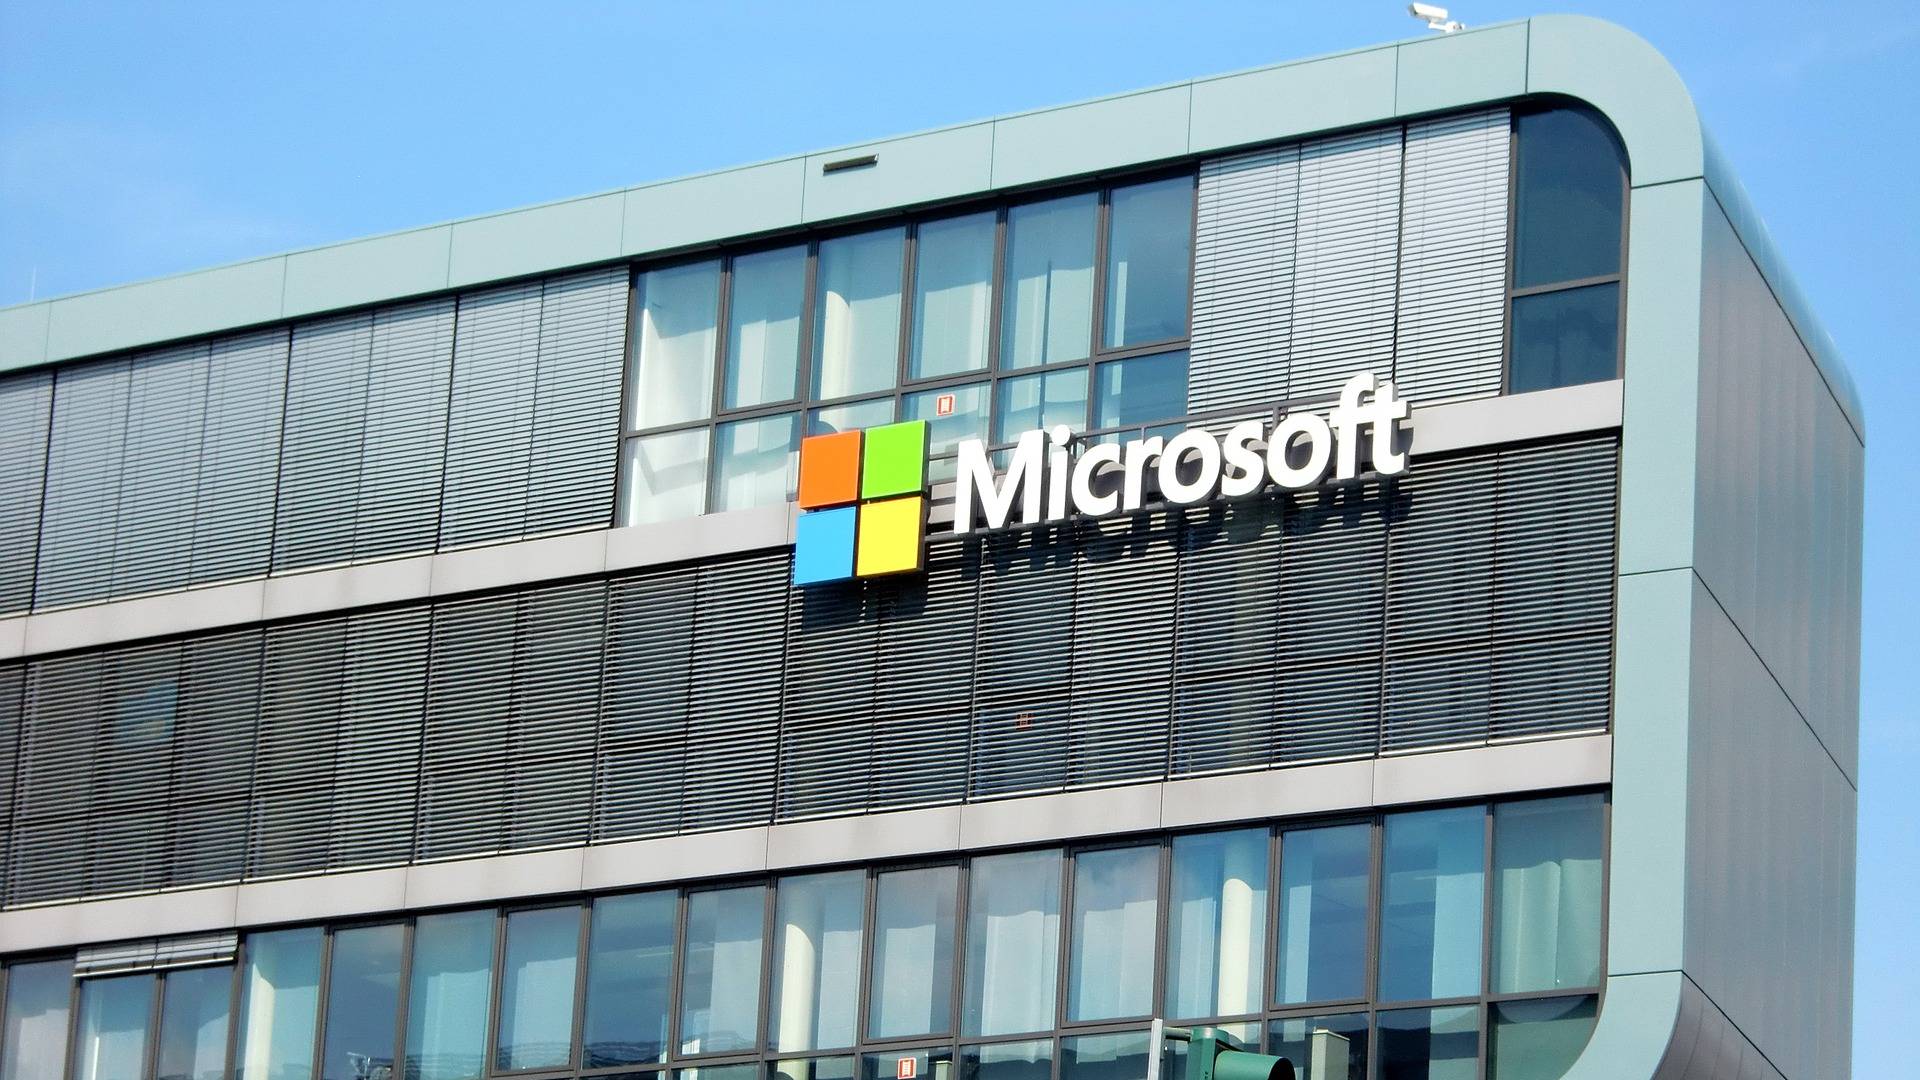 Centro Microsoft GMAIL per attacchi informatici estremamente pericolosi